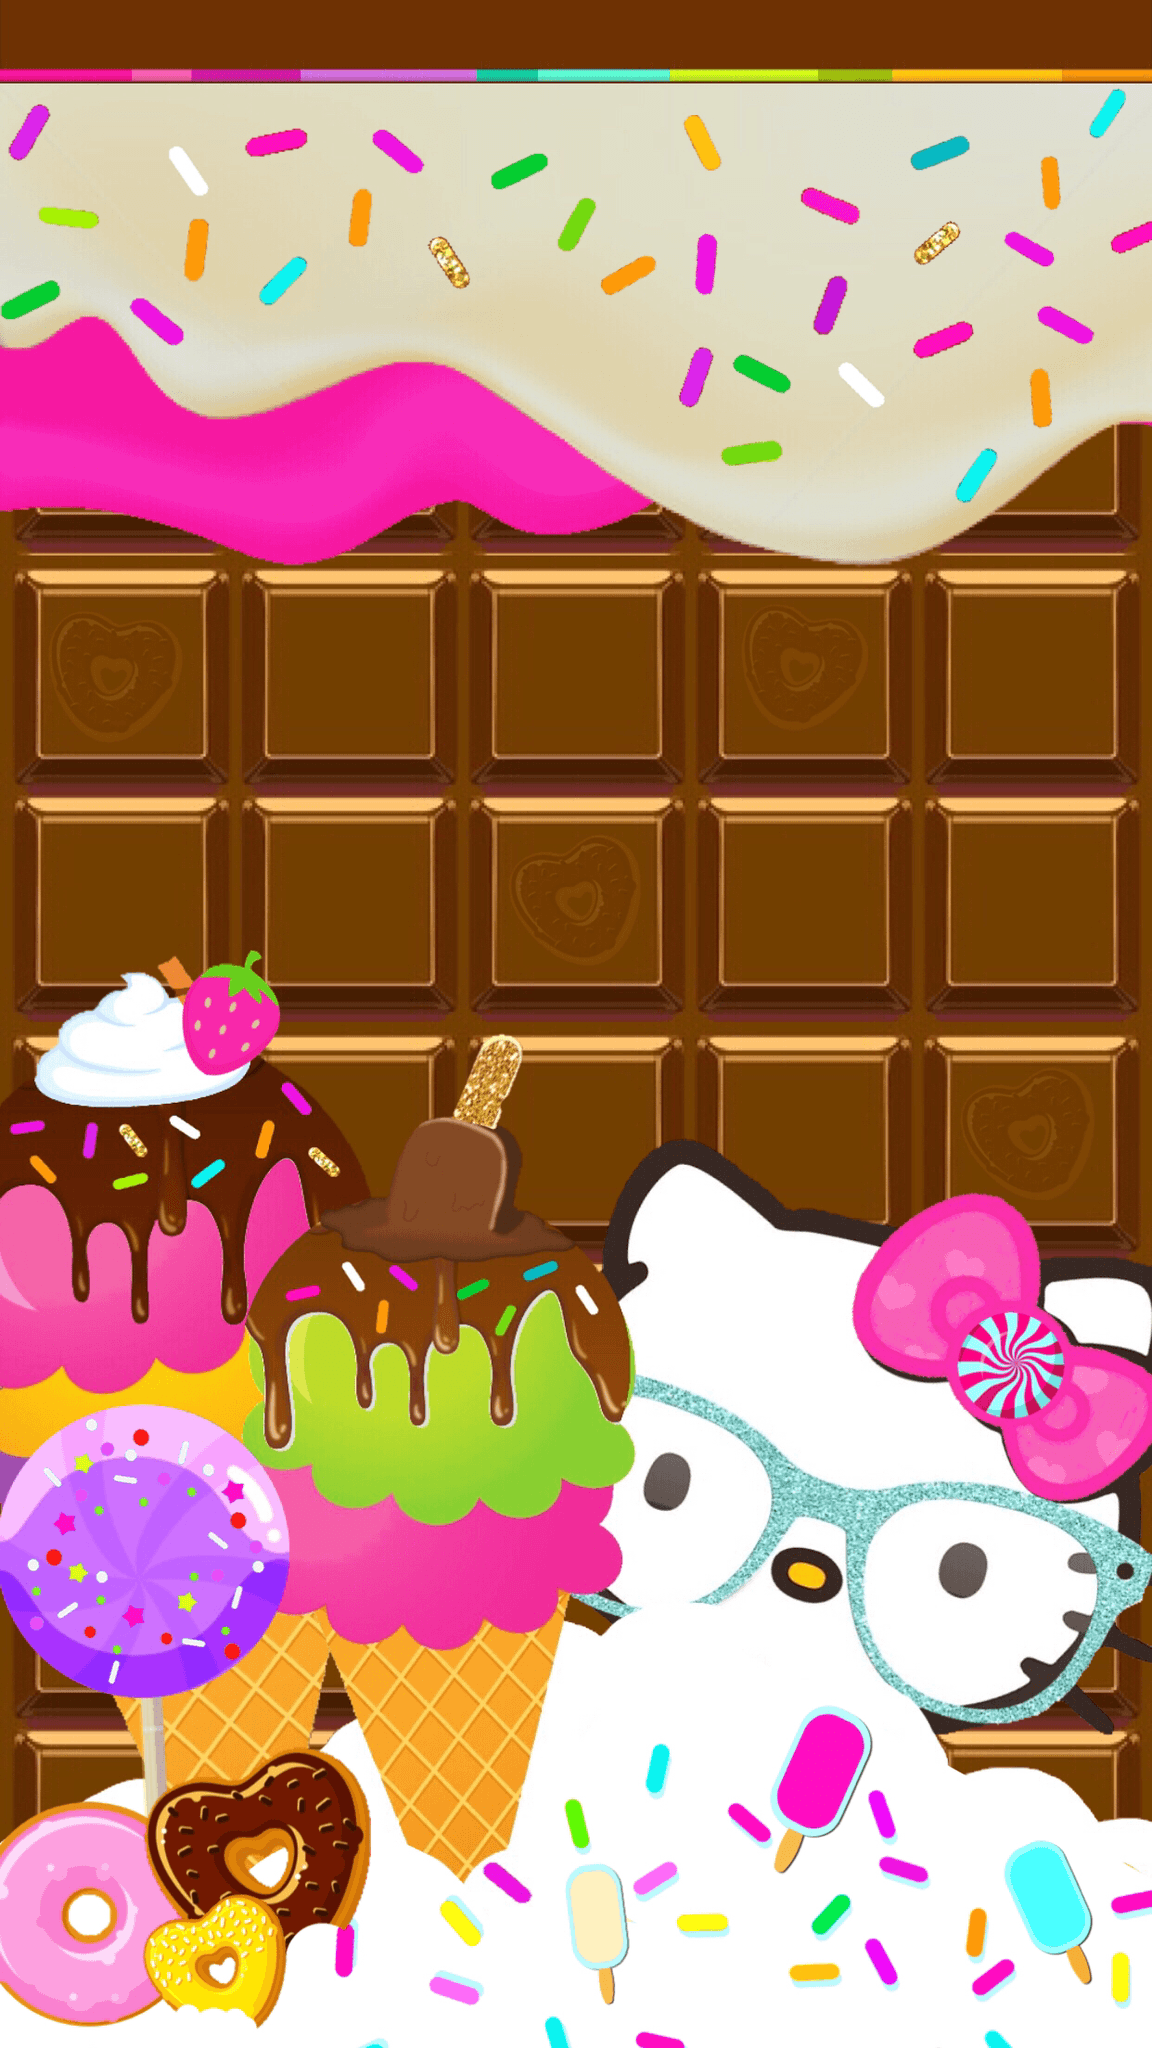 Dropbox Candyland. wallpaper. Candyland